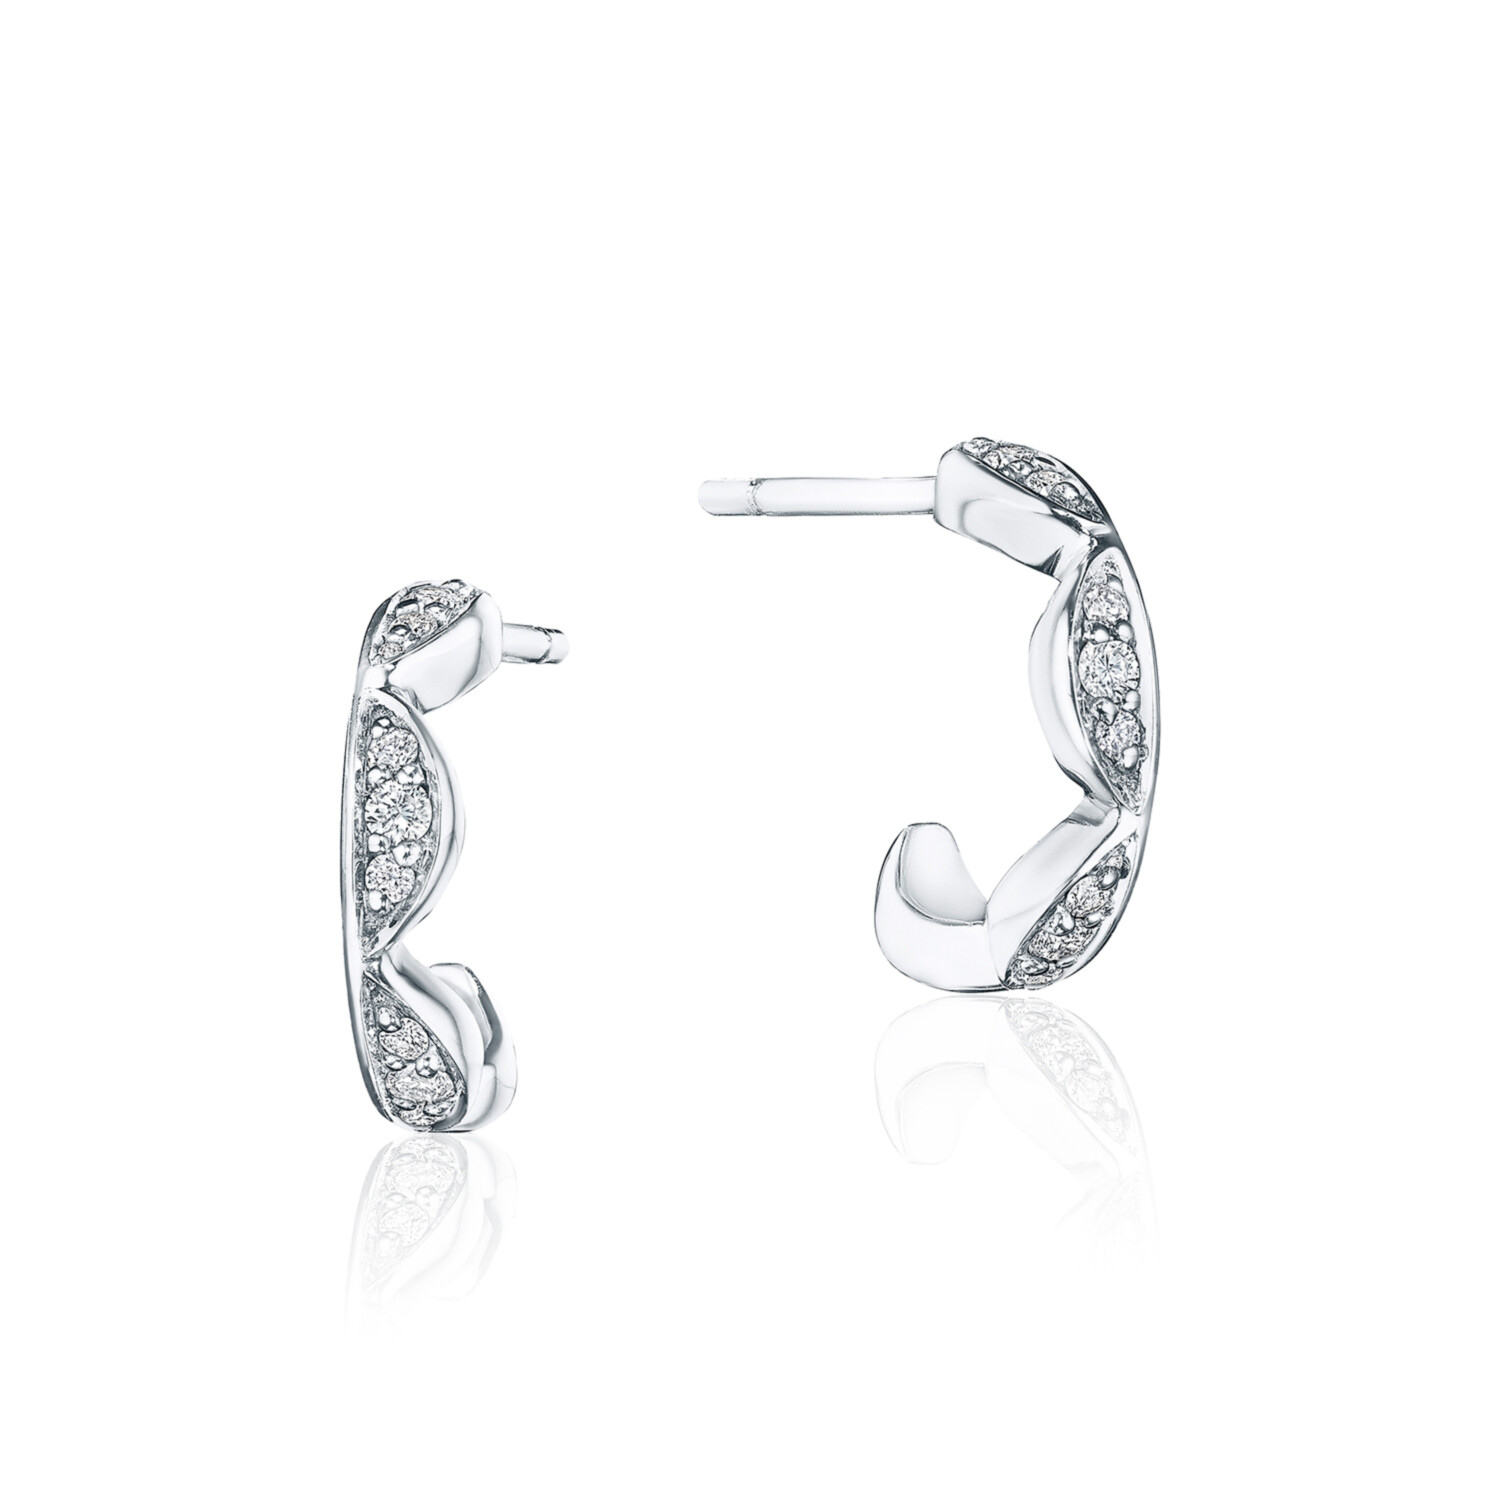 Earrings by Tacori